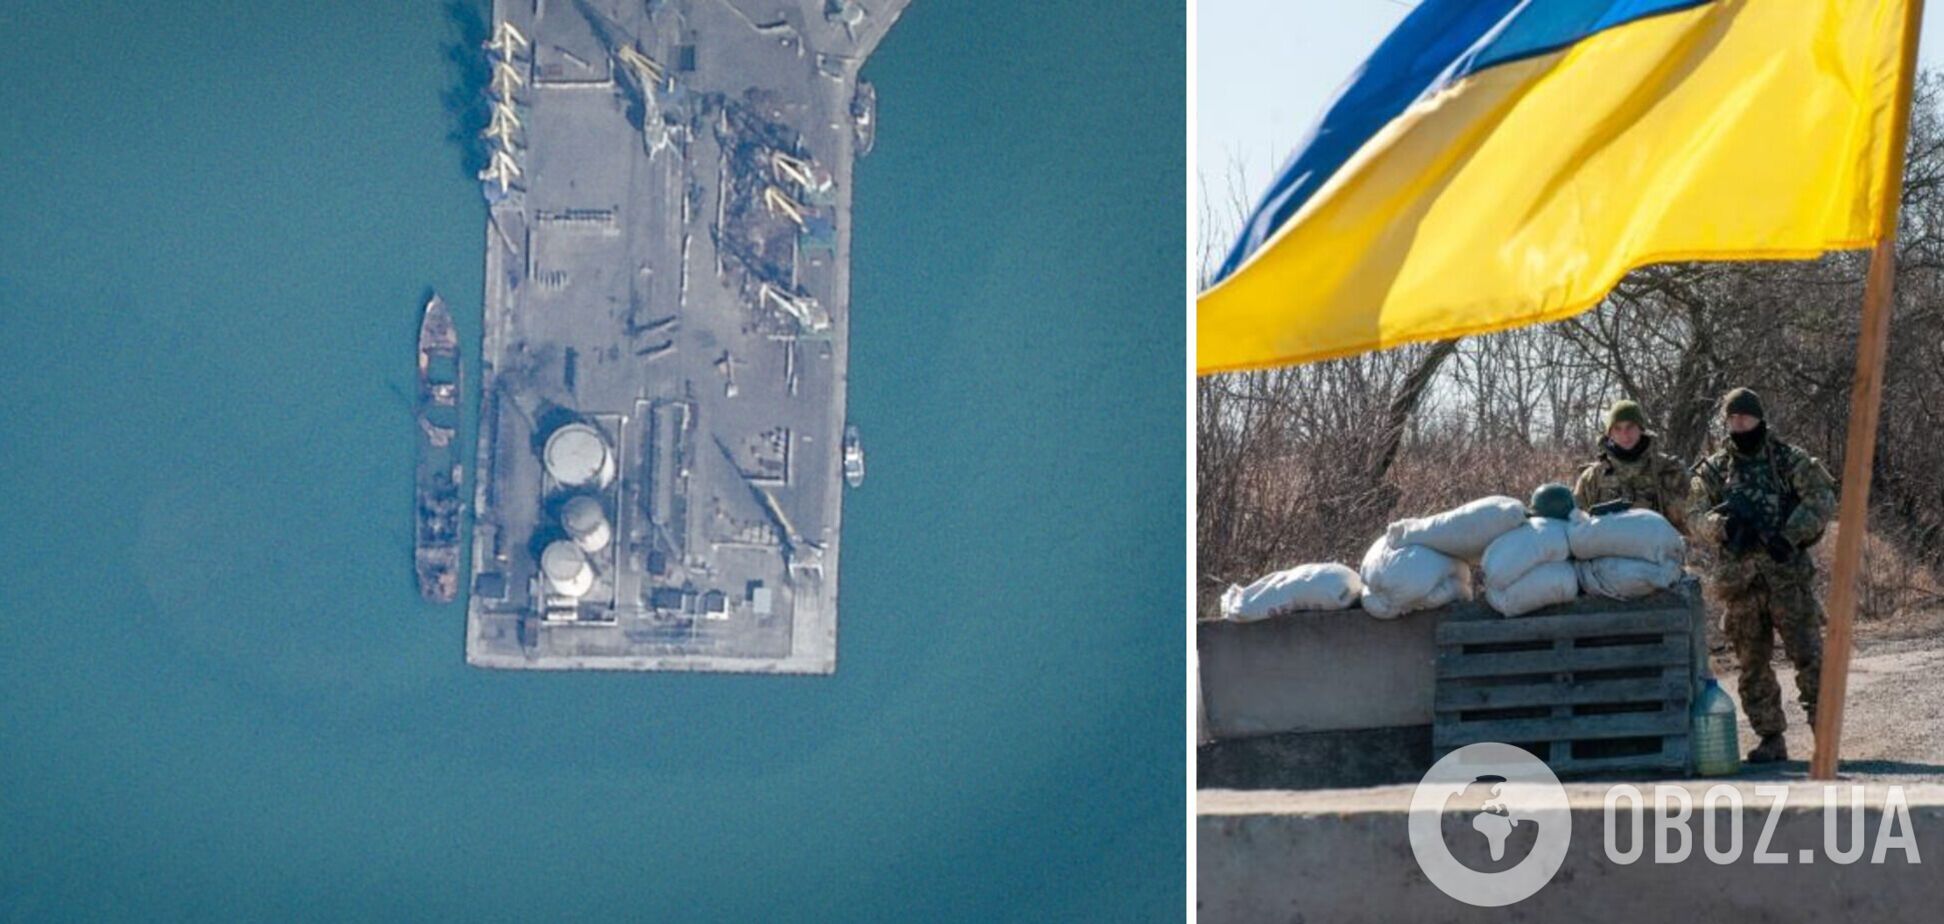 Як виглядає російський військовий корабель 'Саратов', який 'пішов на***' у Бердянську: супутникове фото